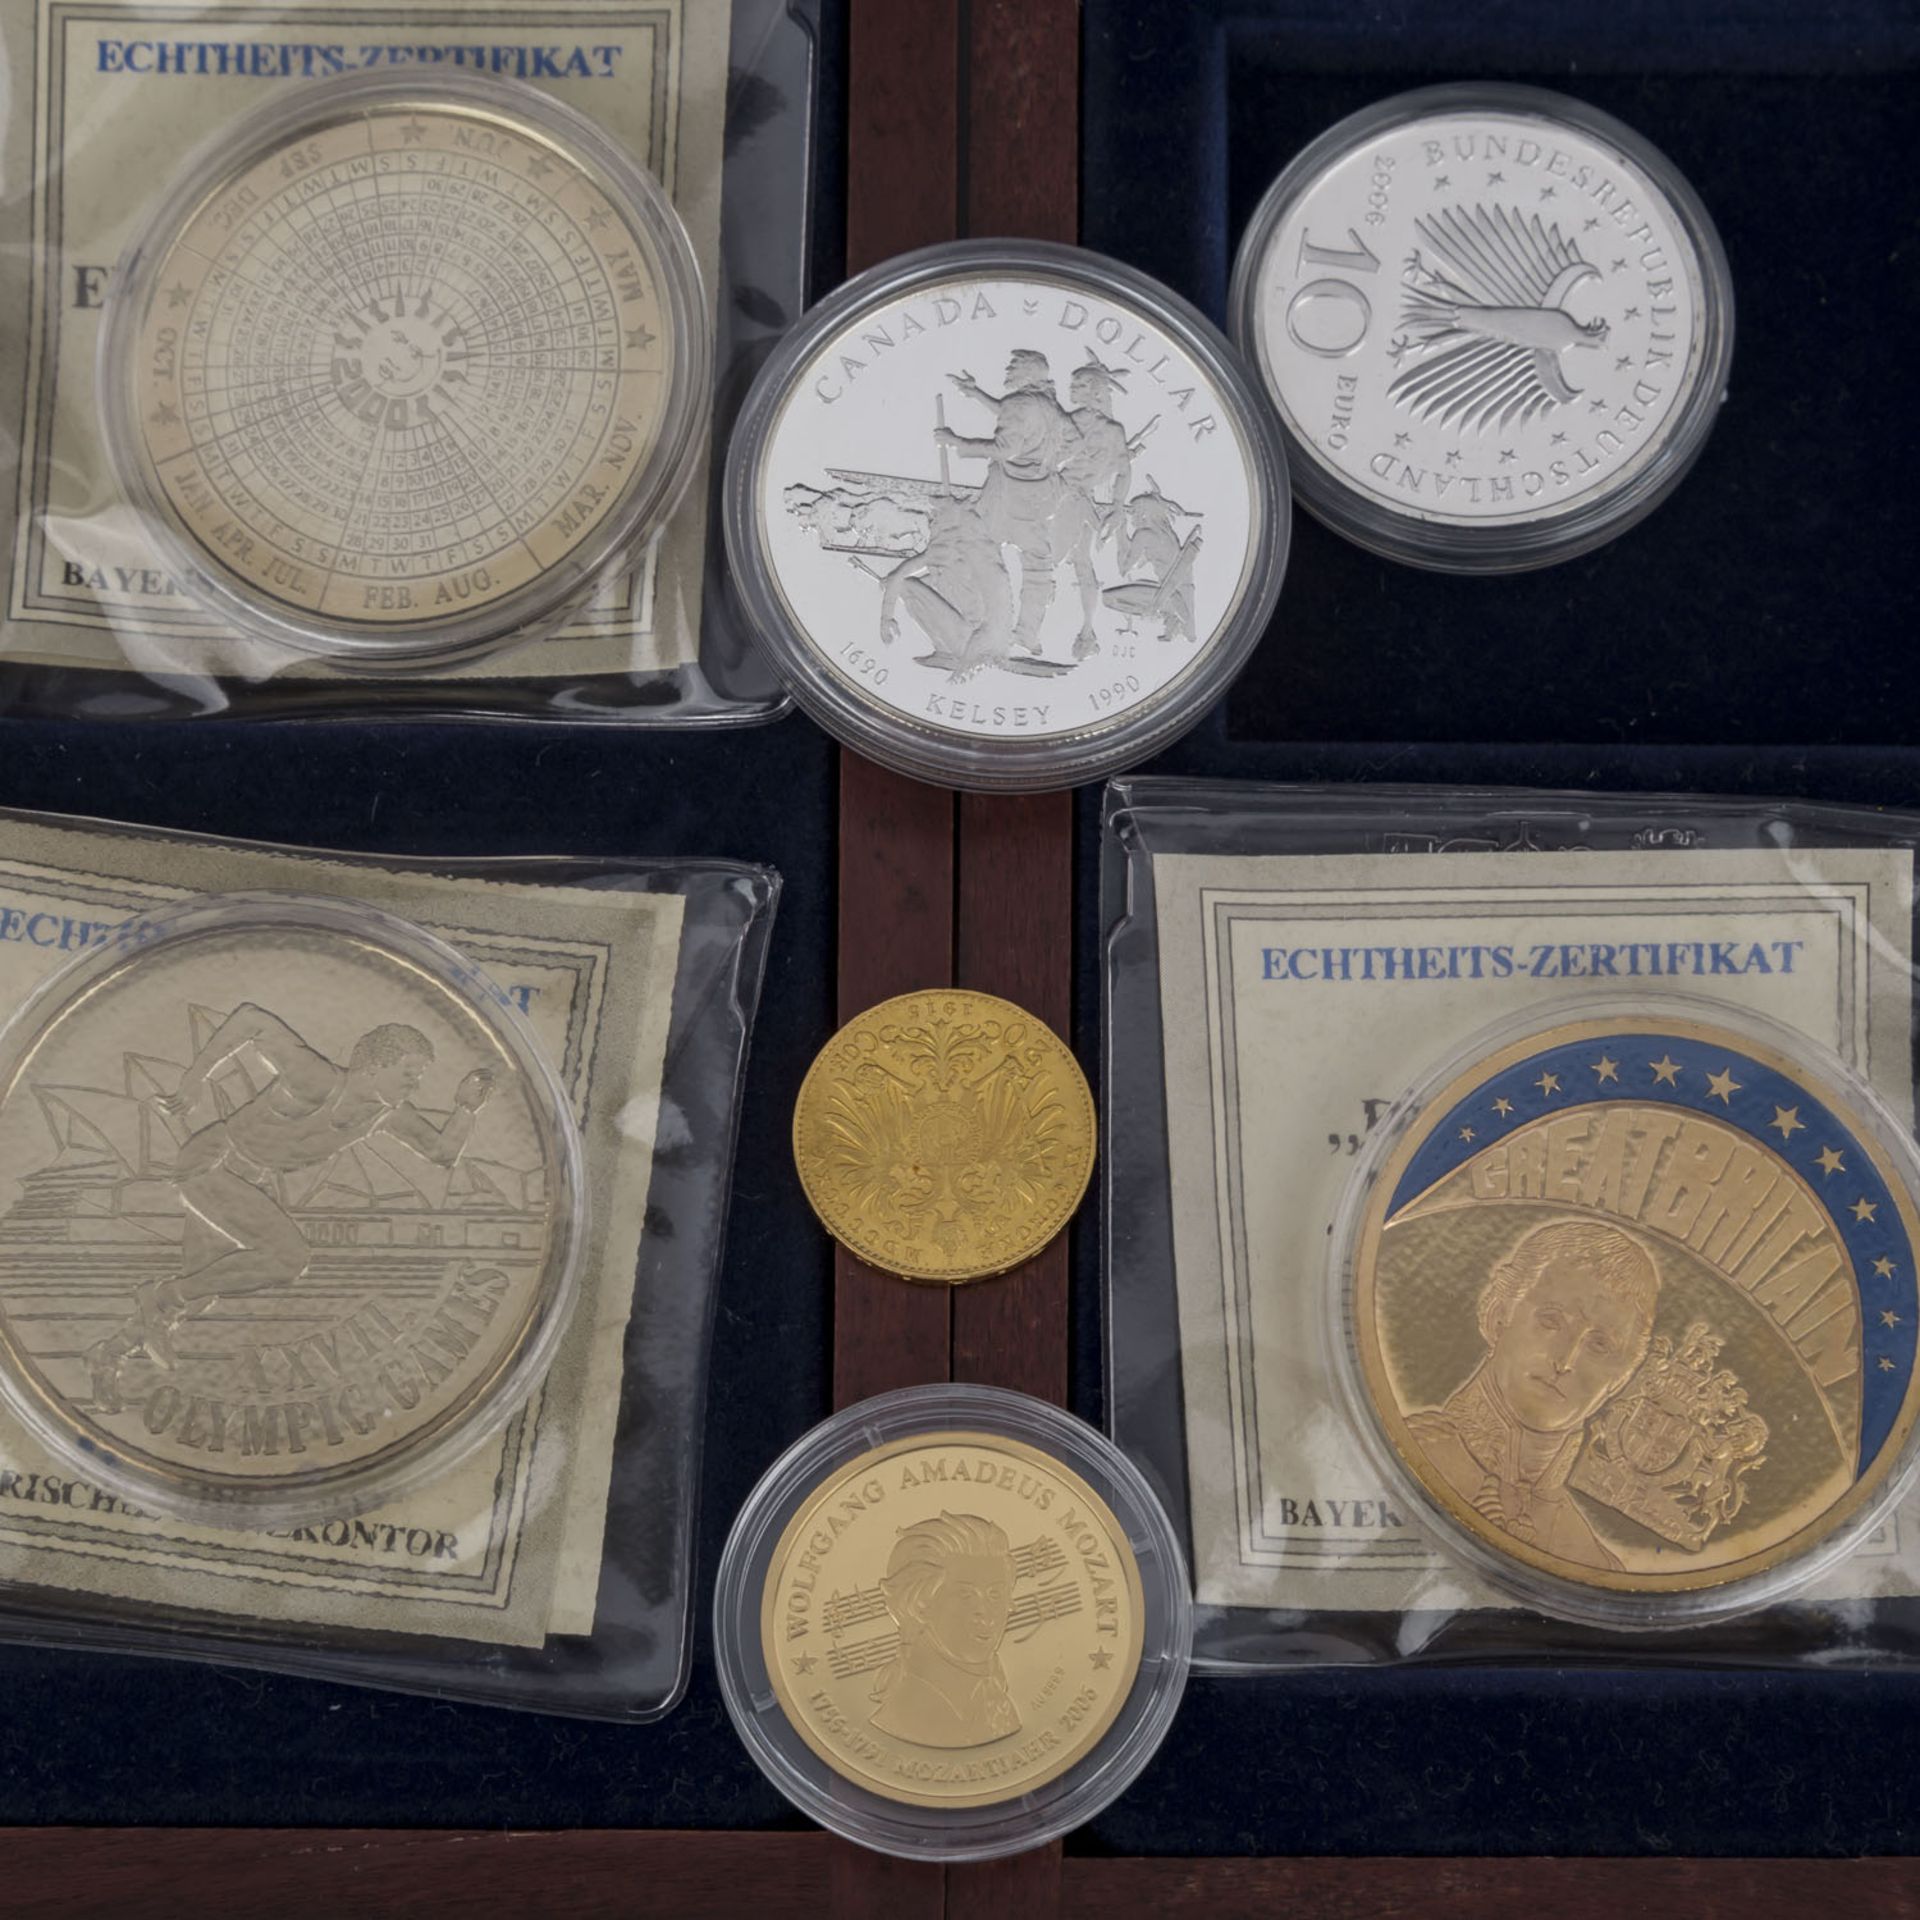 Lot aus diversen Münzen und Medaillen,mit Anteil Gold in der Form von Medaille 6,2 g fein "Mozart" - Bild 2 aus 6